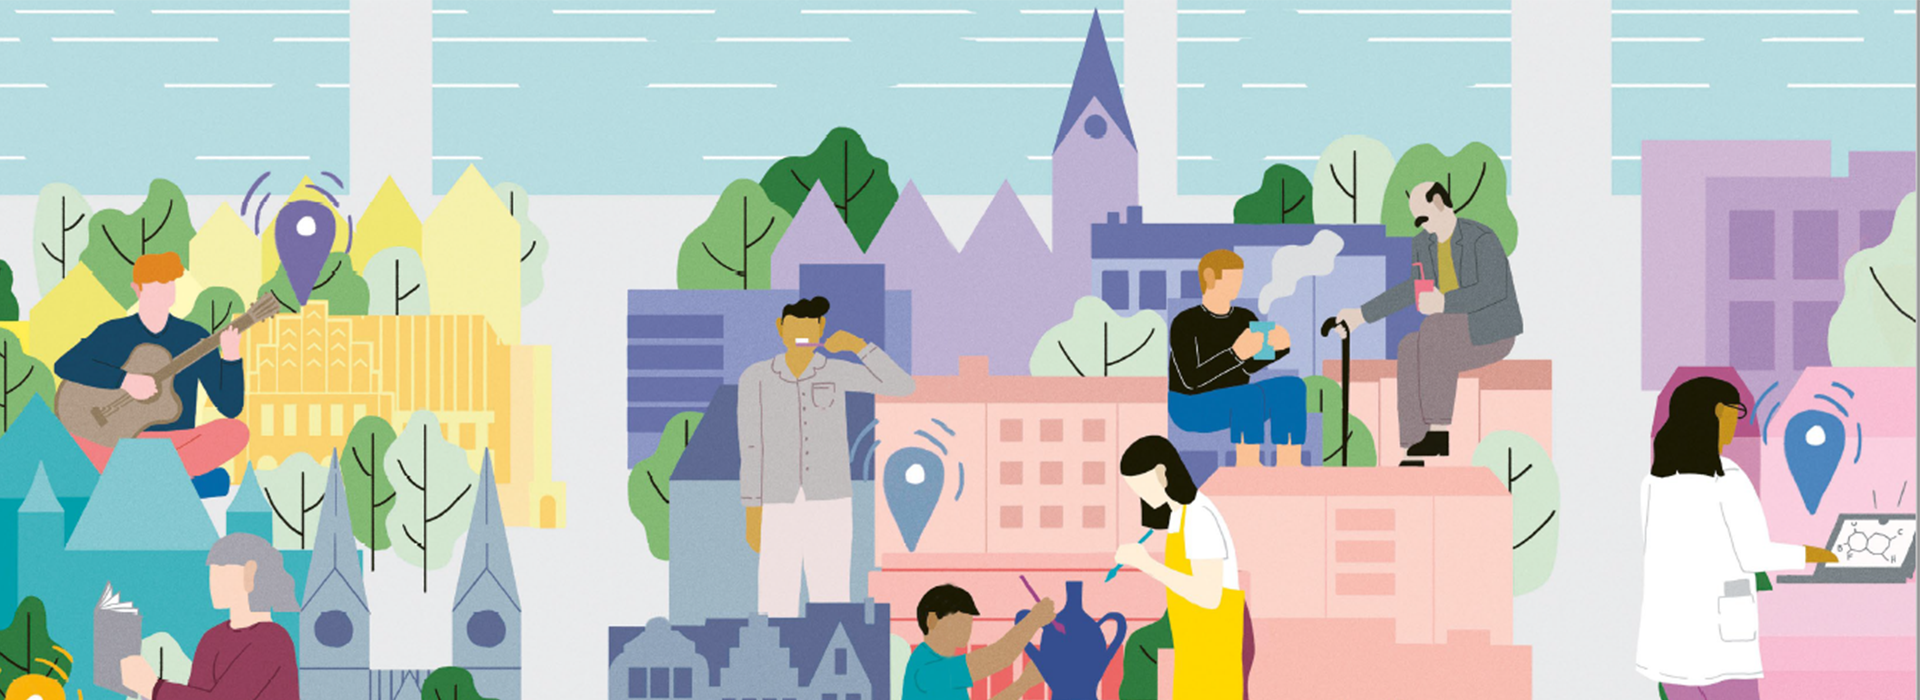 Illustration mehrerer Personen in einer bunten Bremer Innenstadt; Zwei Personen bemalen einen Topf, eine putzt die Zähne, eine hält ein Heißgetränk in der Hand und eine ein Kaltgetränk